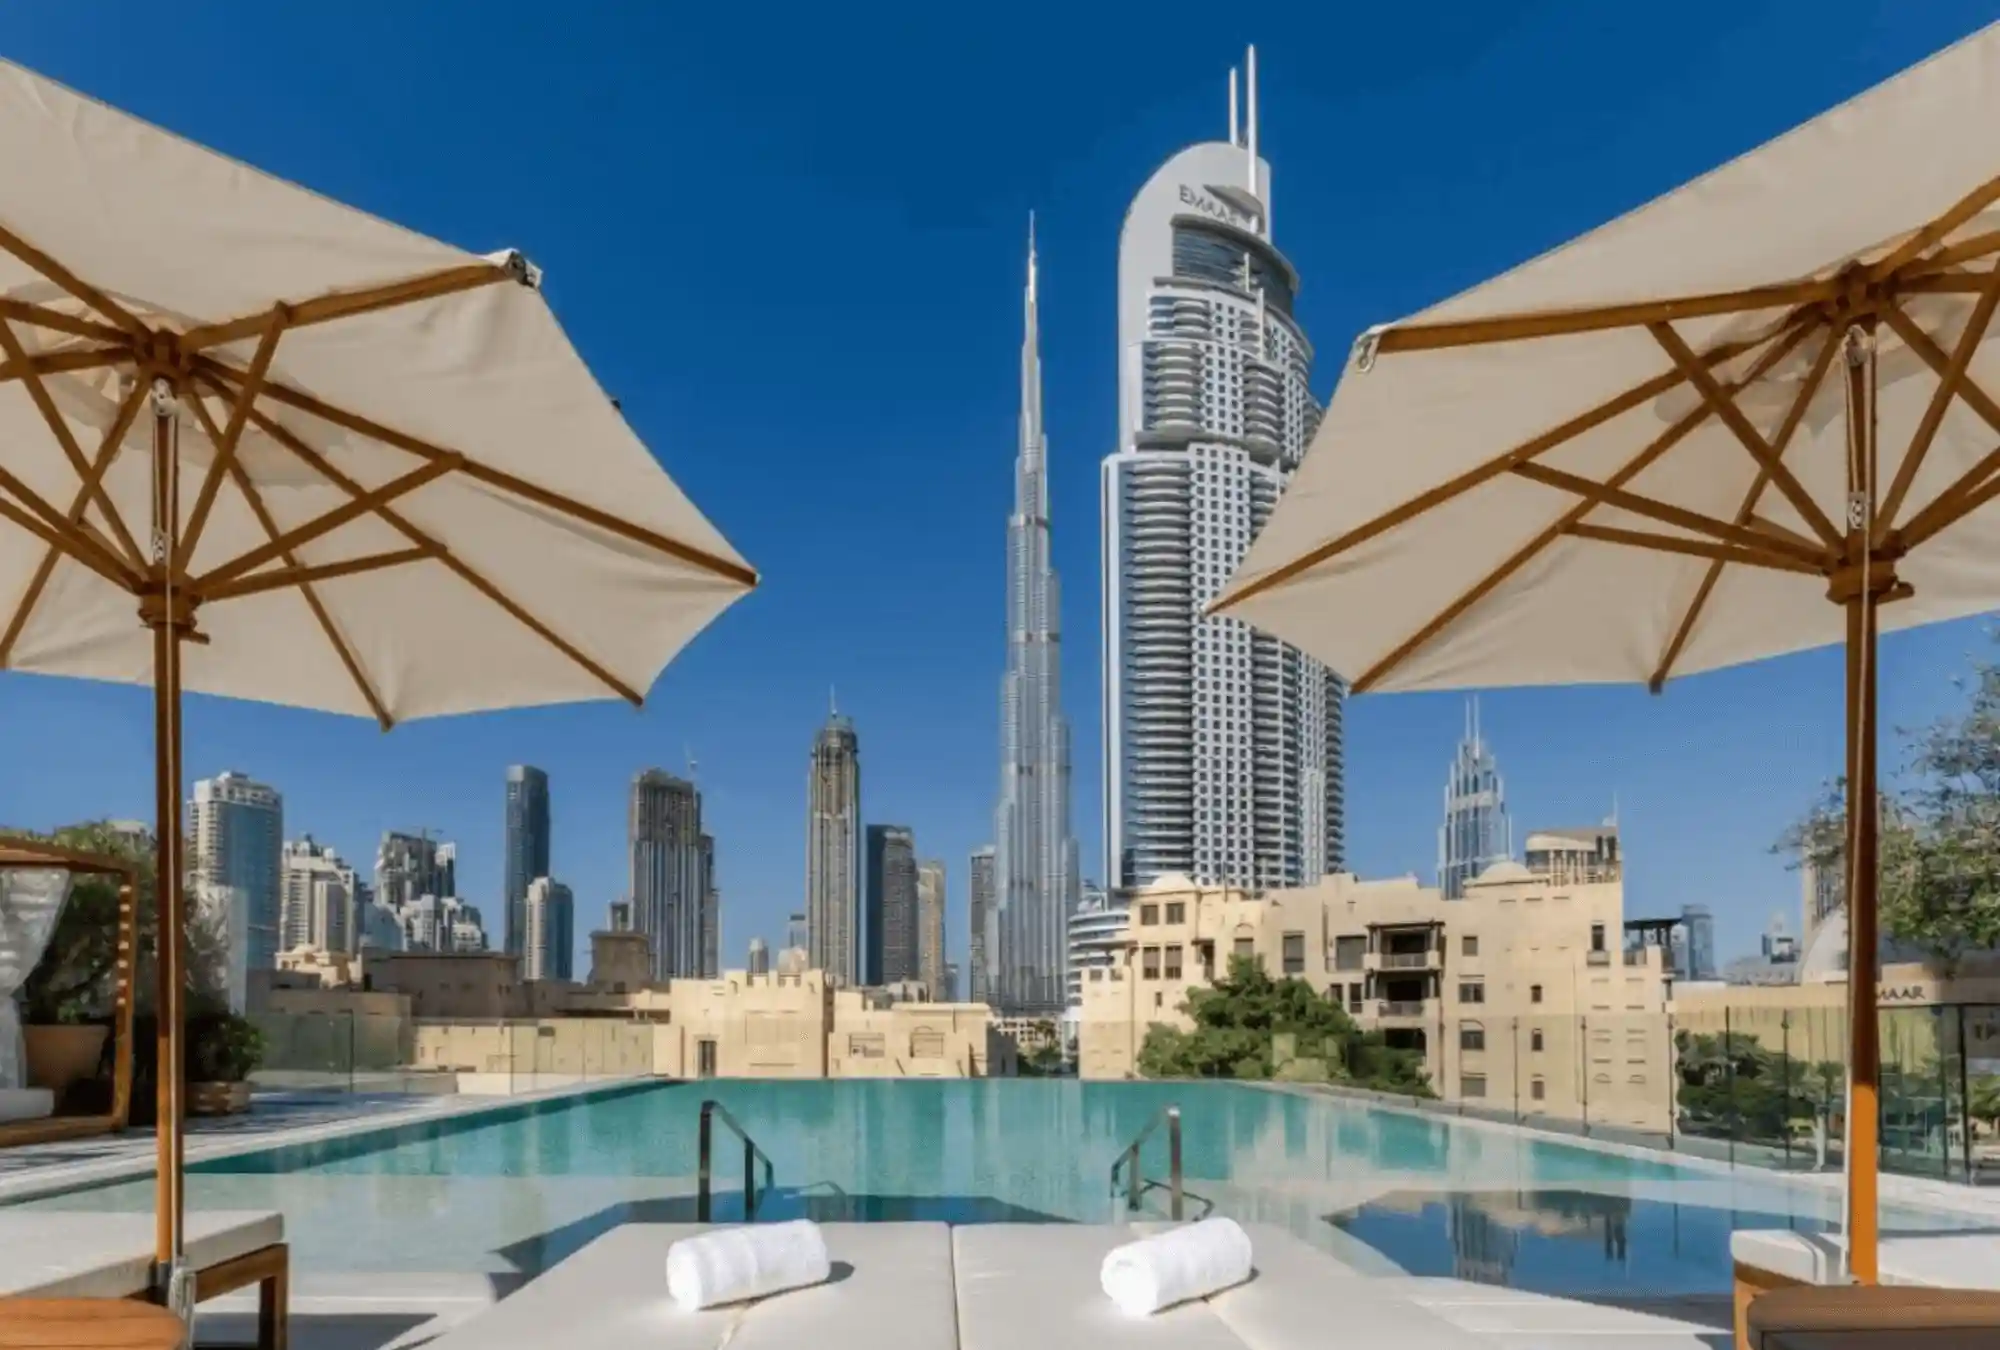 Propriétés à louer au centre-ville de Dubaï